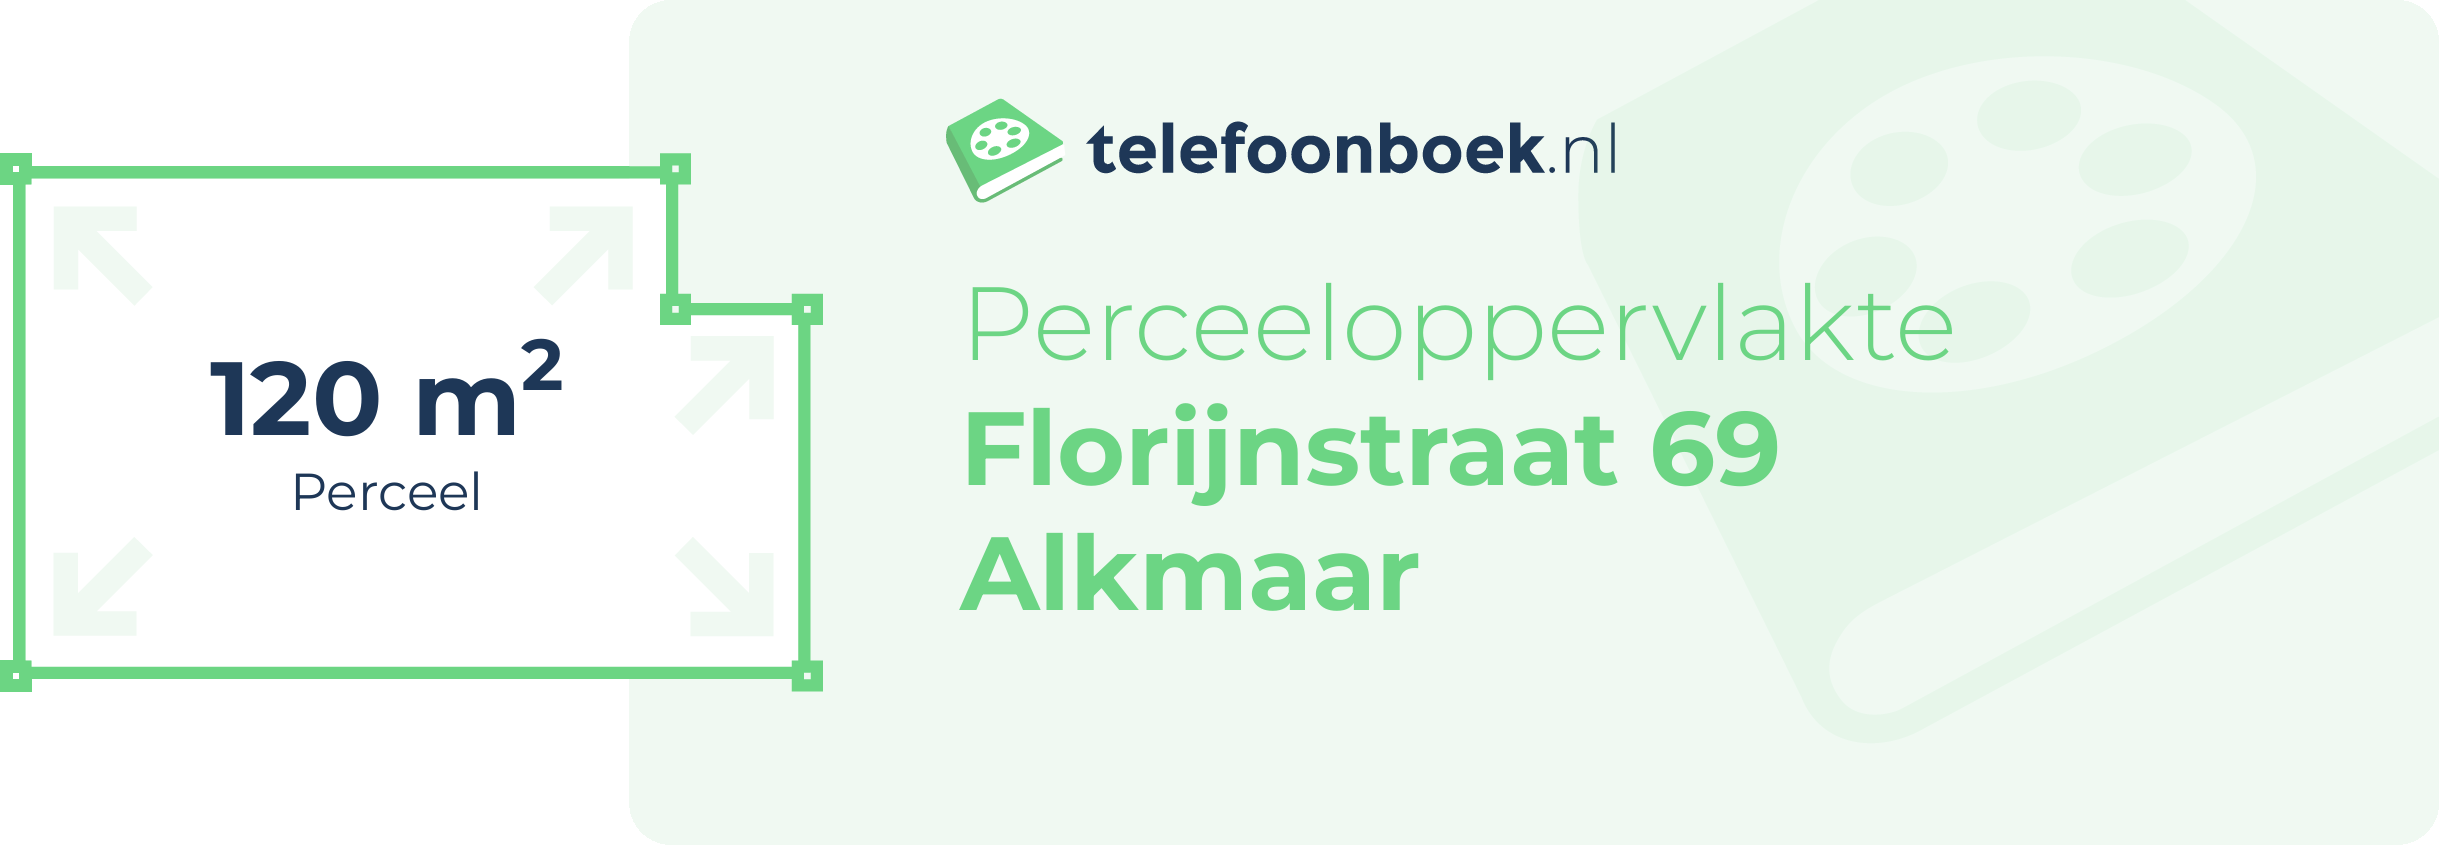 Perceeloppervlakte Florijnstraat 69 Alkmaar